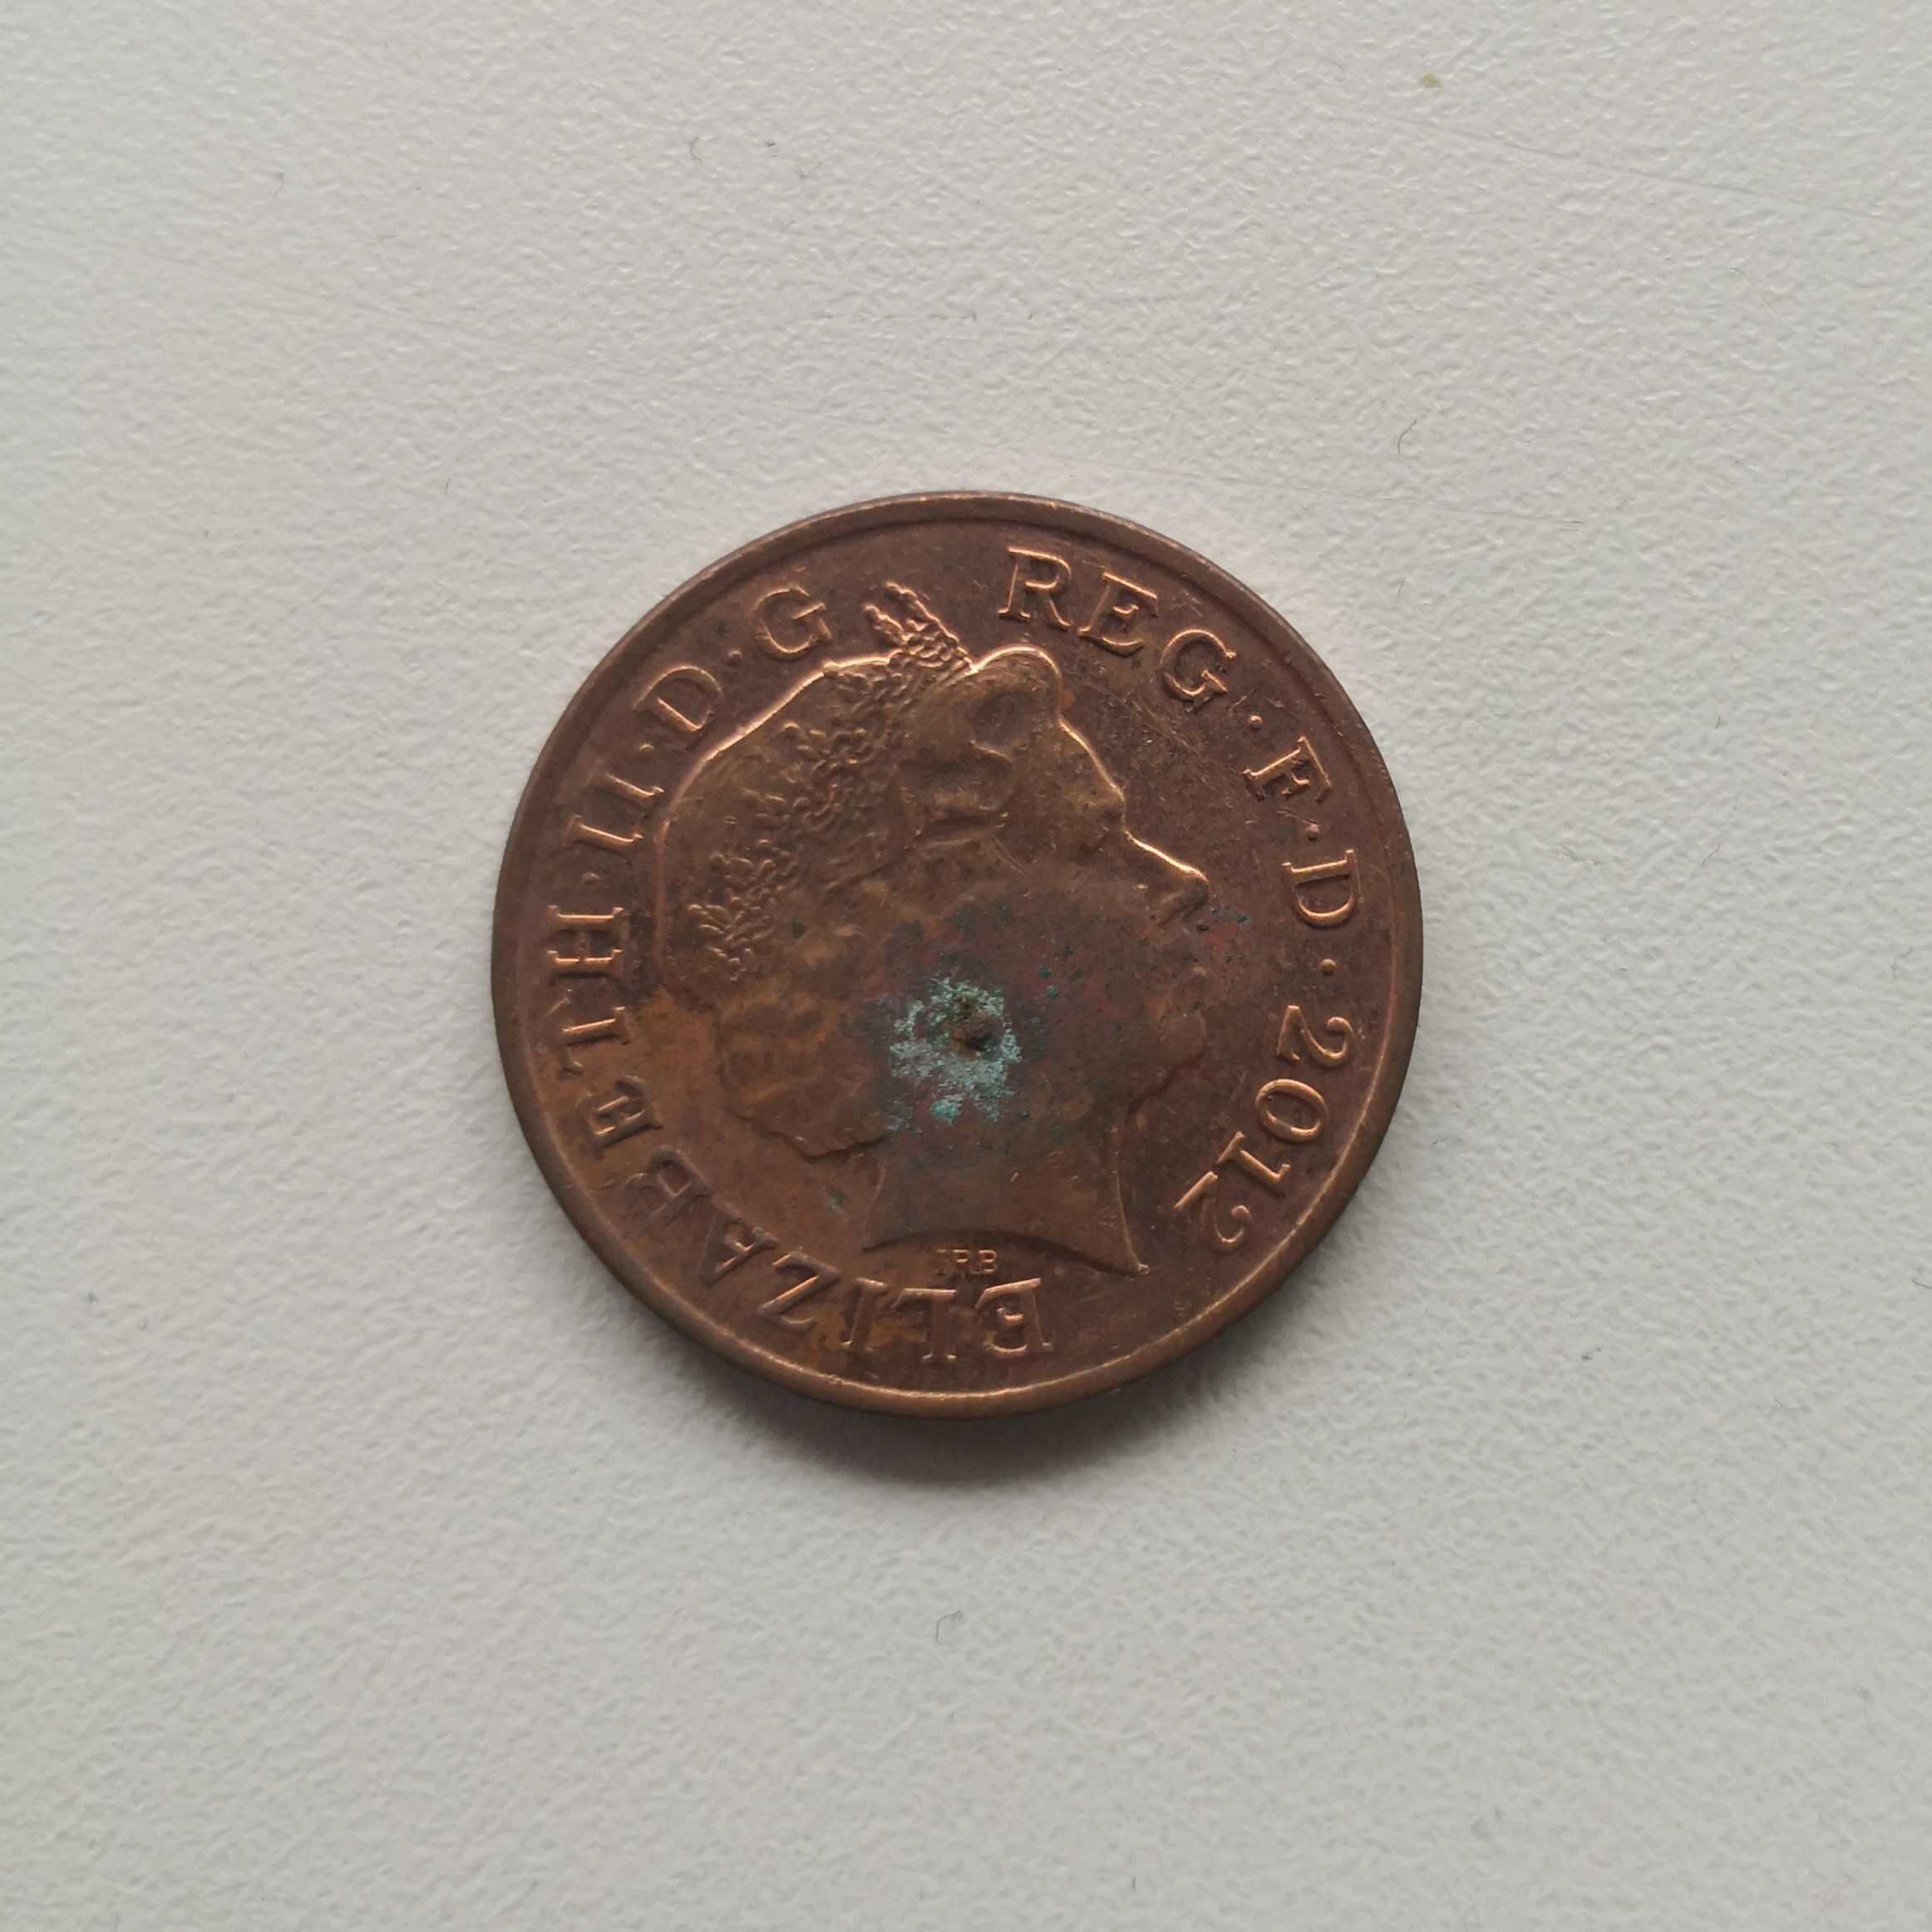 moneta one penny 2012 Elizabeth II